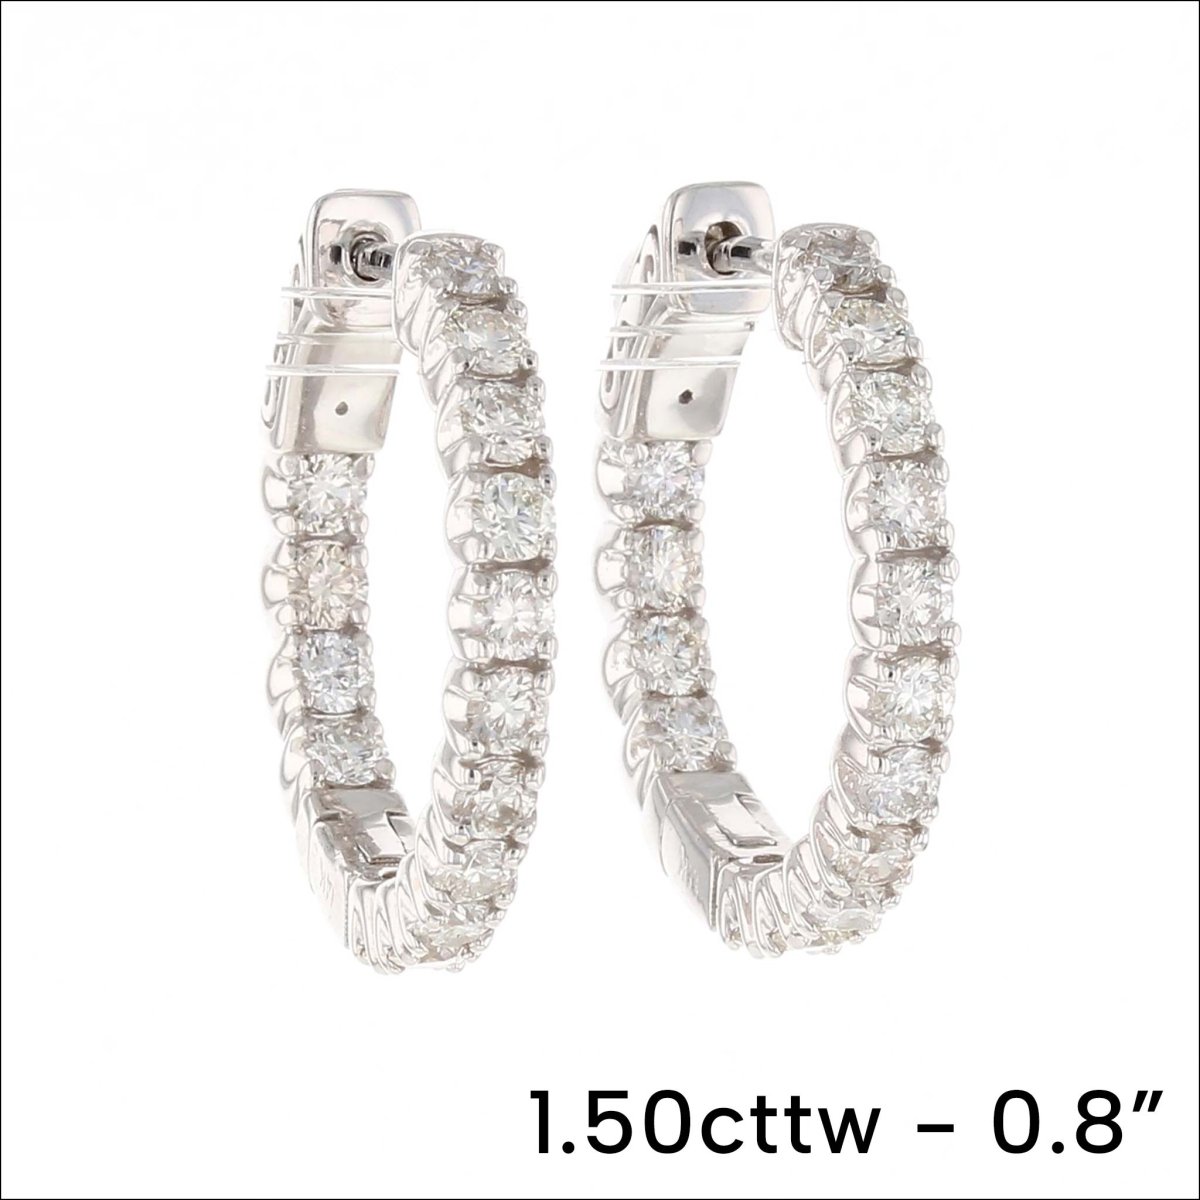 In/Out Oval Diamond Hoop Earrings 14KW - JewelsmithEarrings